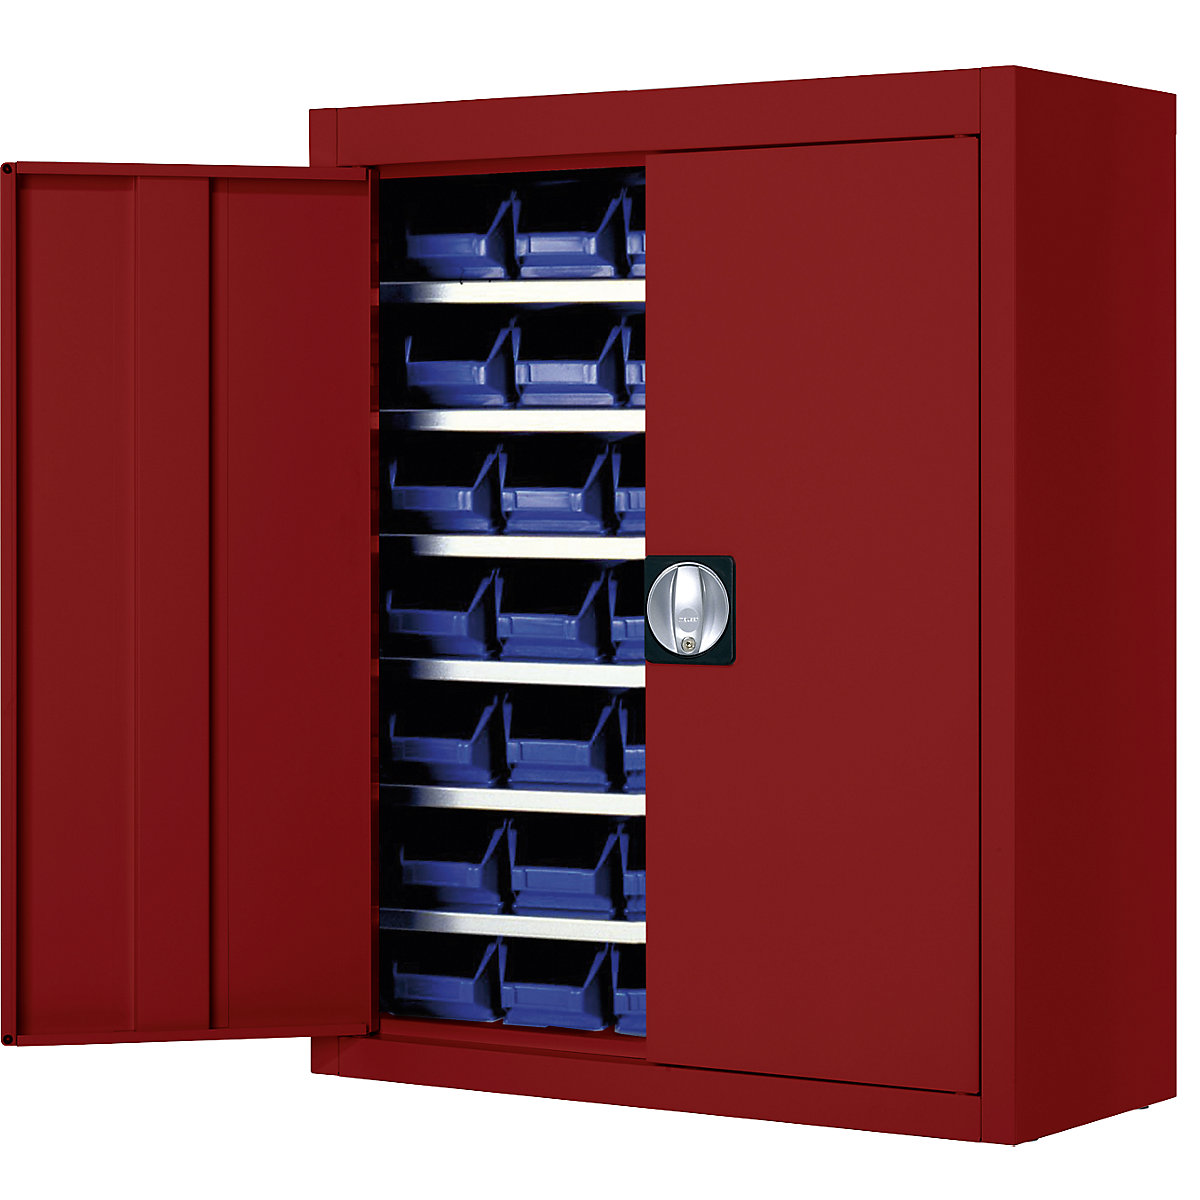 Magazinschrank mit Sichtlagerkästen mauser, HxBxT 820 x 680 x 280 mm, einfarbig, rot, 42 Kästen-4